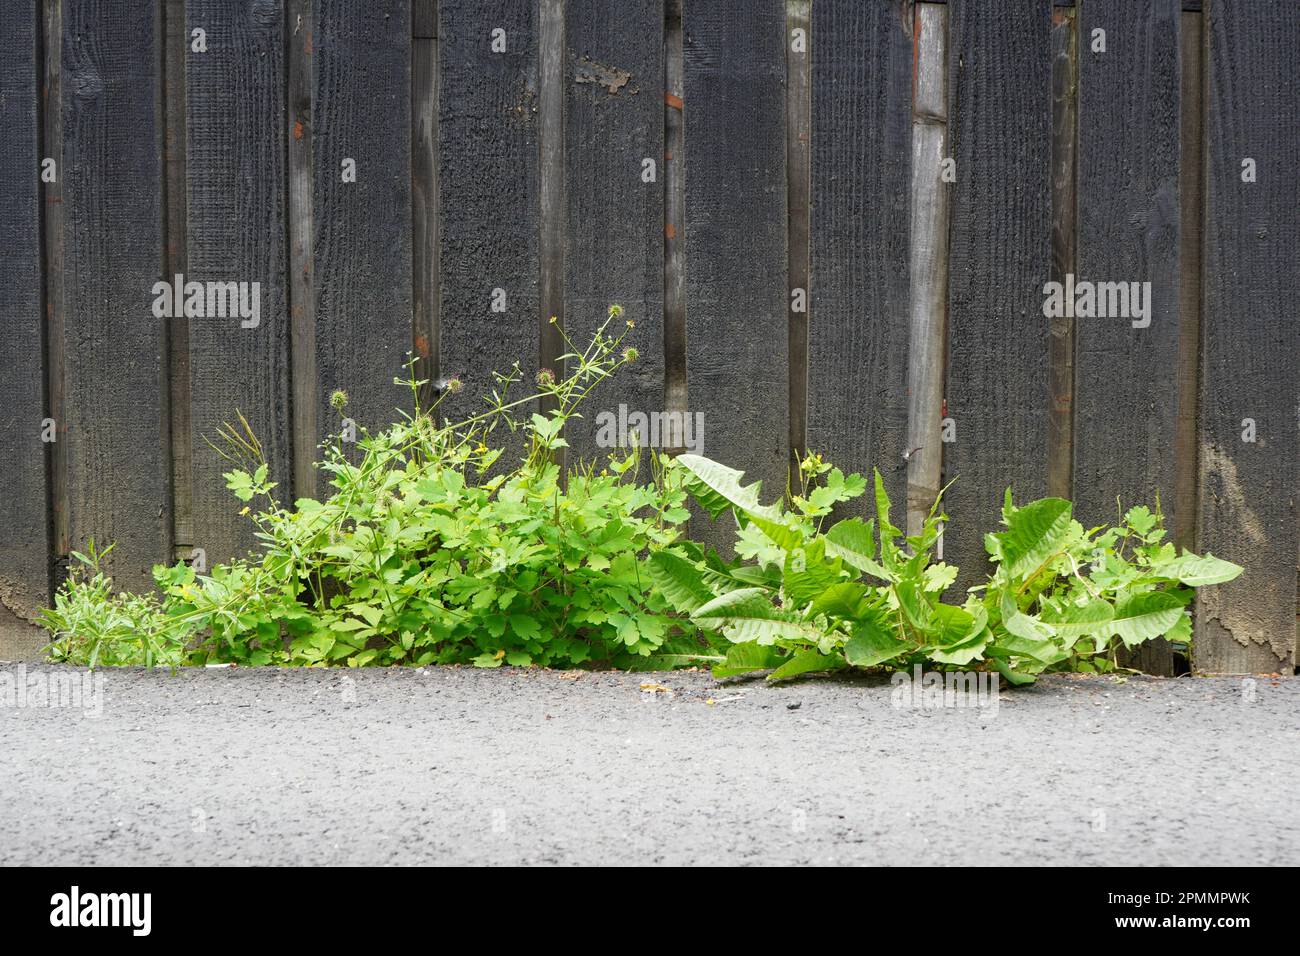 Grüne Wildkräuter (Chelidonium majus, taraxacum officinale, galium aparine), die durch Asphalt in der Nähe des alten Holzzauns gewachsen sind Stockfoto